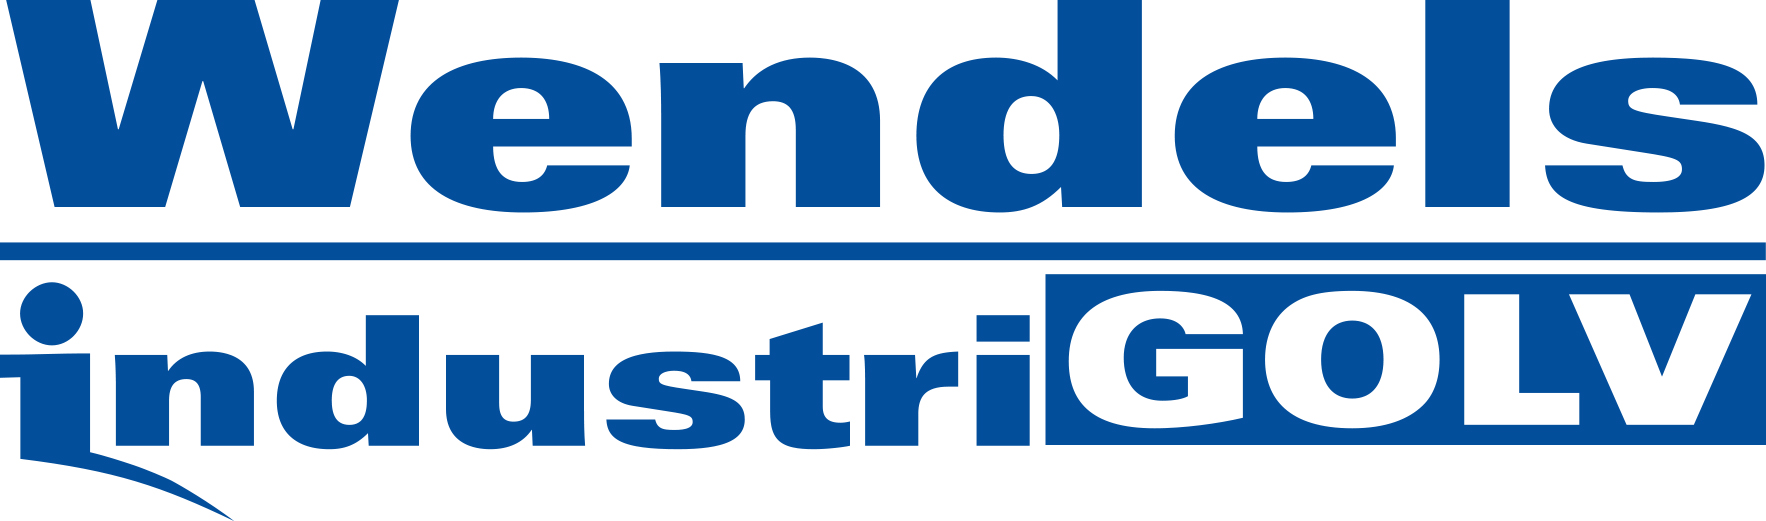 Wendels industrigolv logotyp